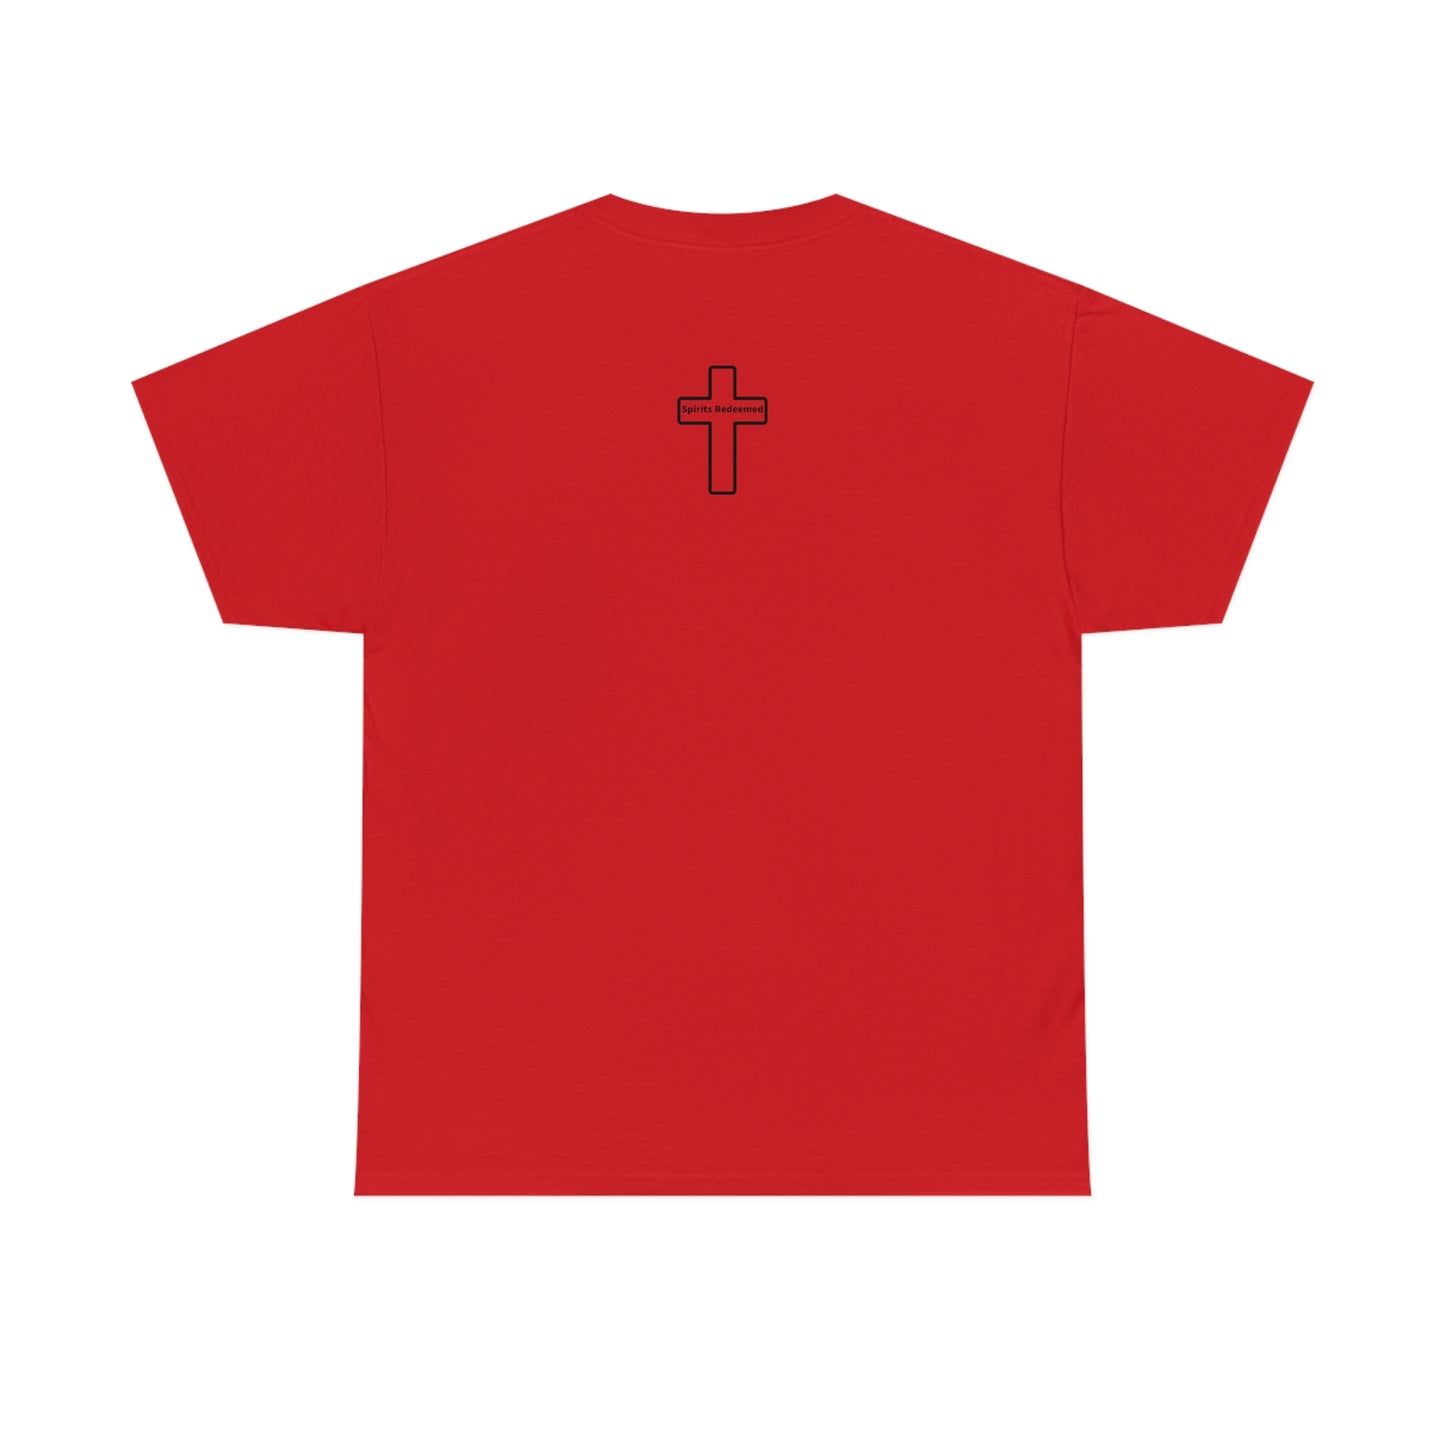 Philippians 4:13 unisex T-shirt